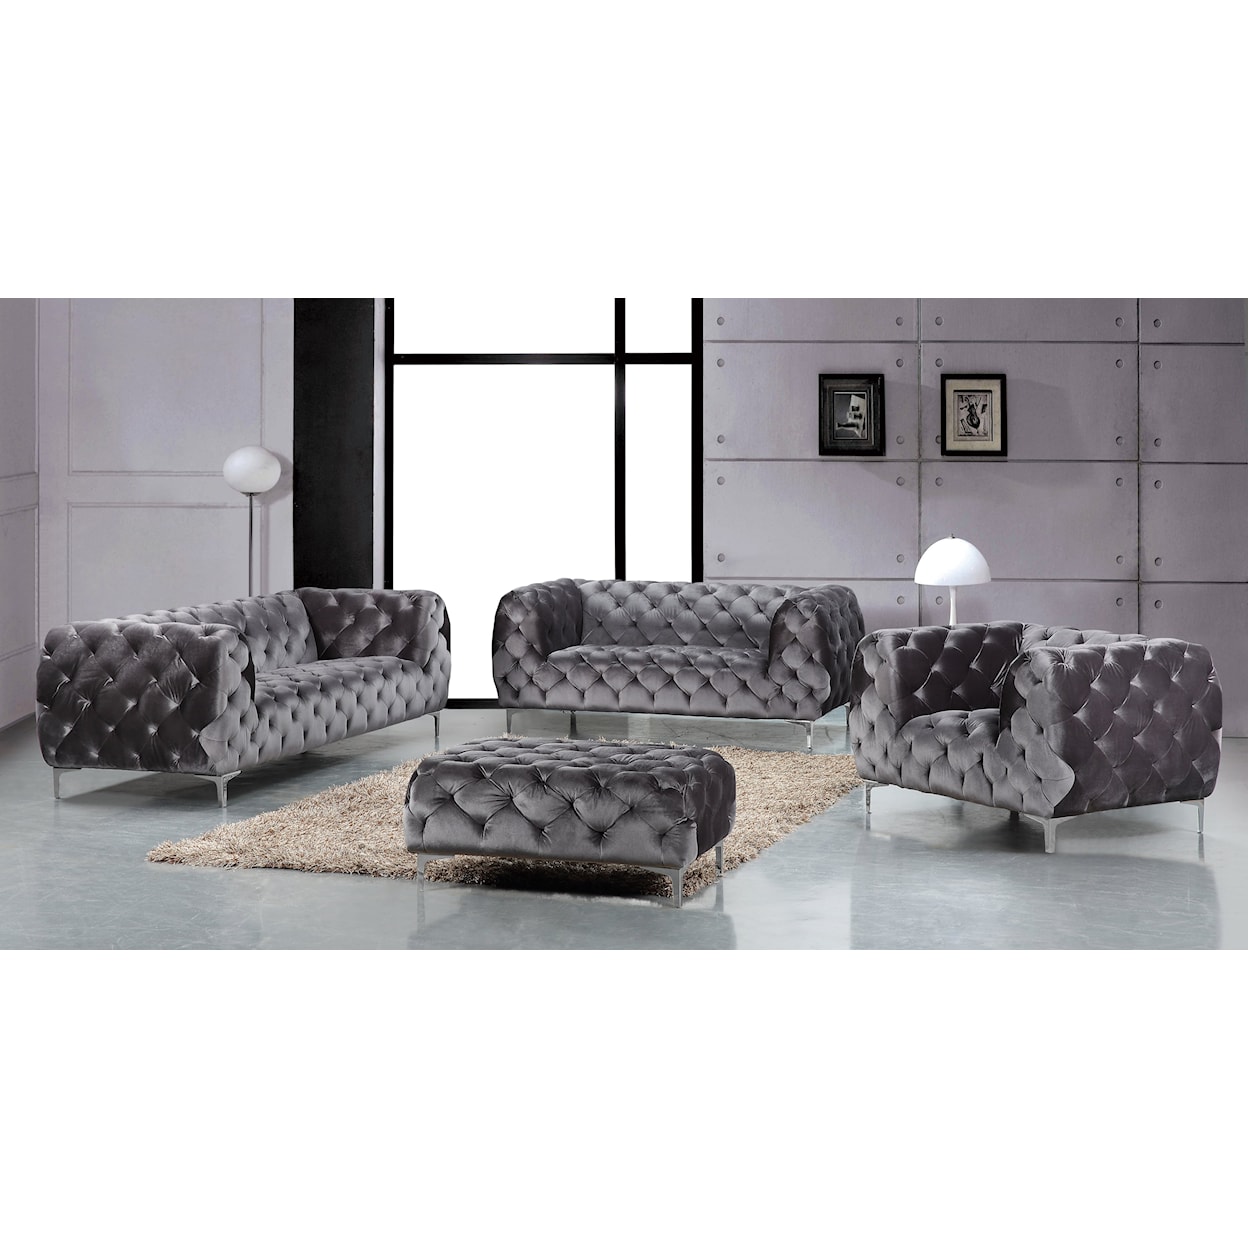 Meridian Furniture Mercer Sofa